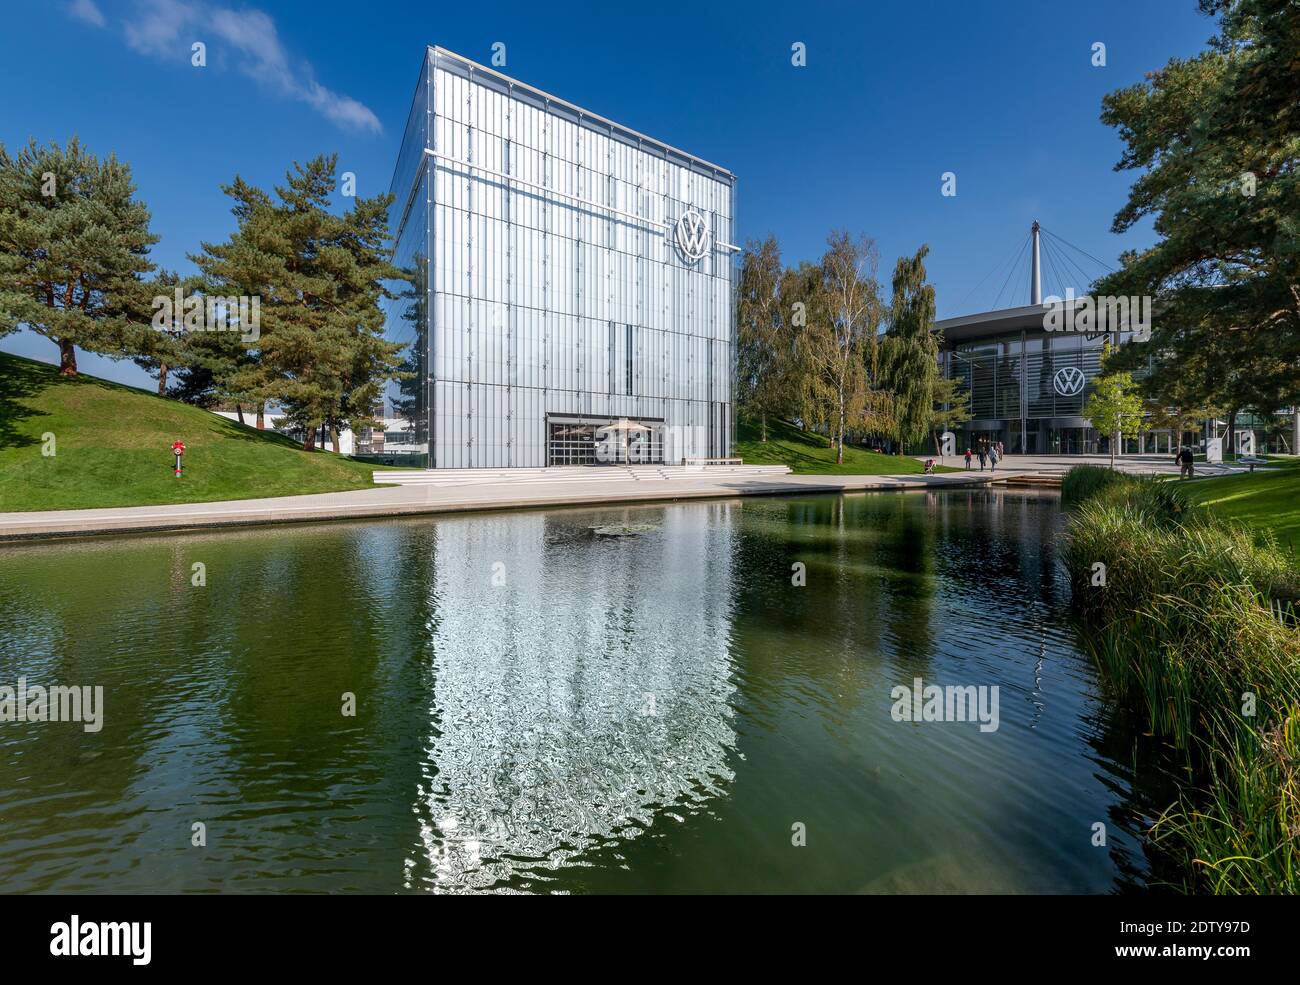 Le pavillon Volkswagen en forme de cube de l'immense Autostadt - ville de voitures - à Wolfsburg. Allemagne. Conçu par Ray Hole Architects. Banque D'Images